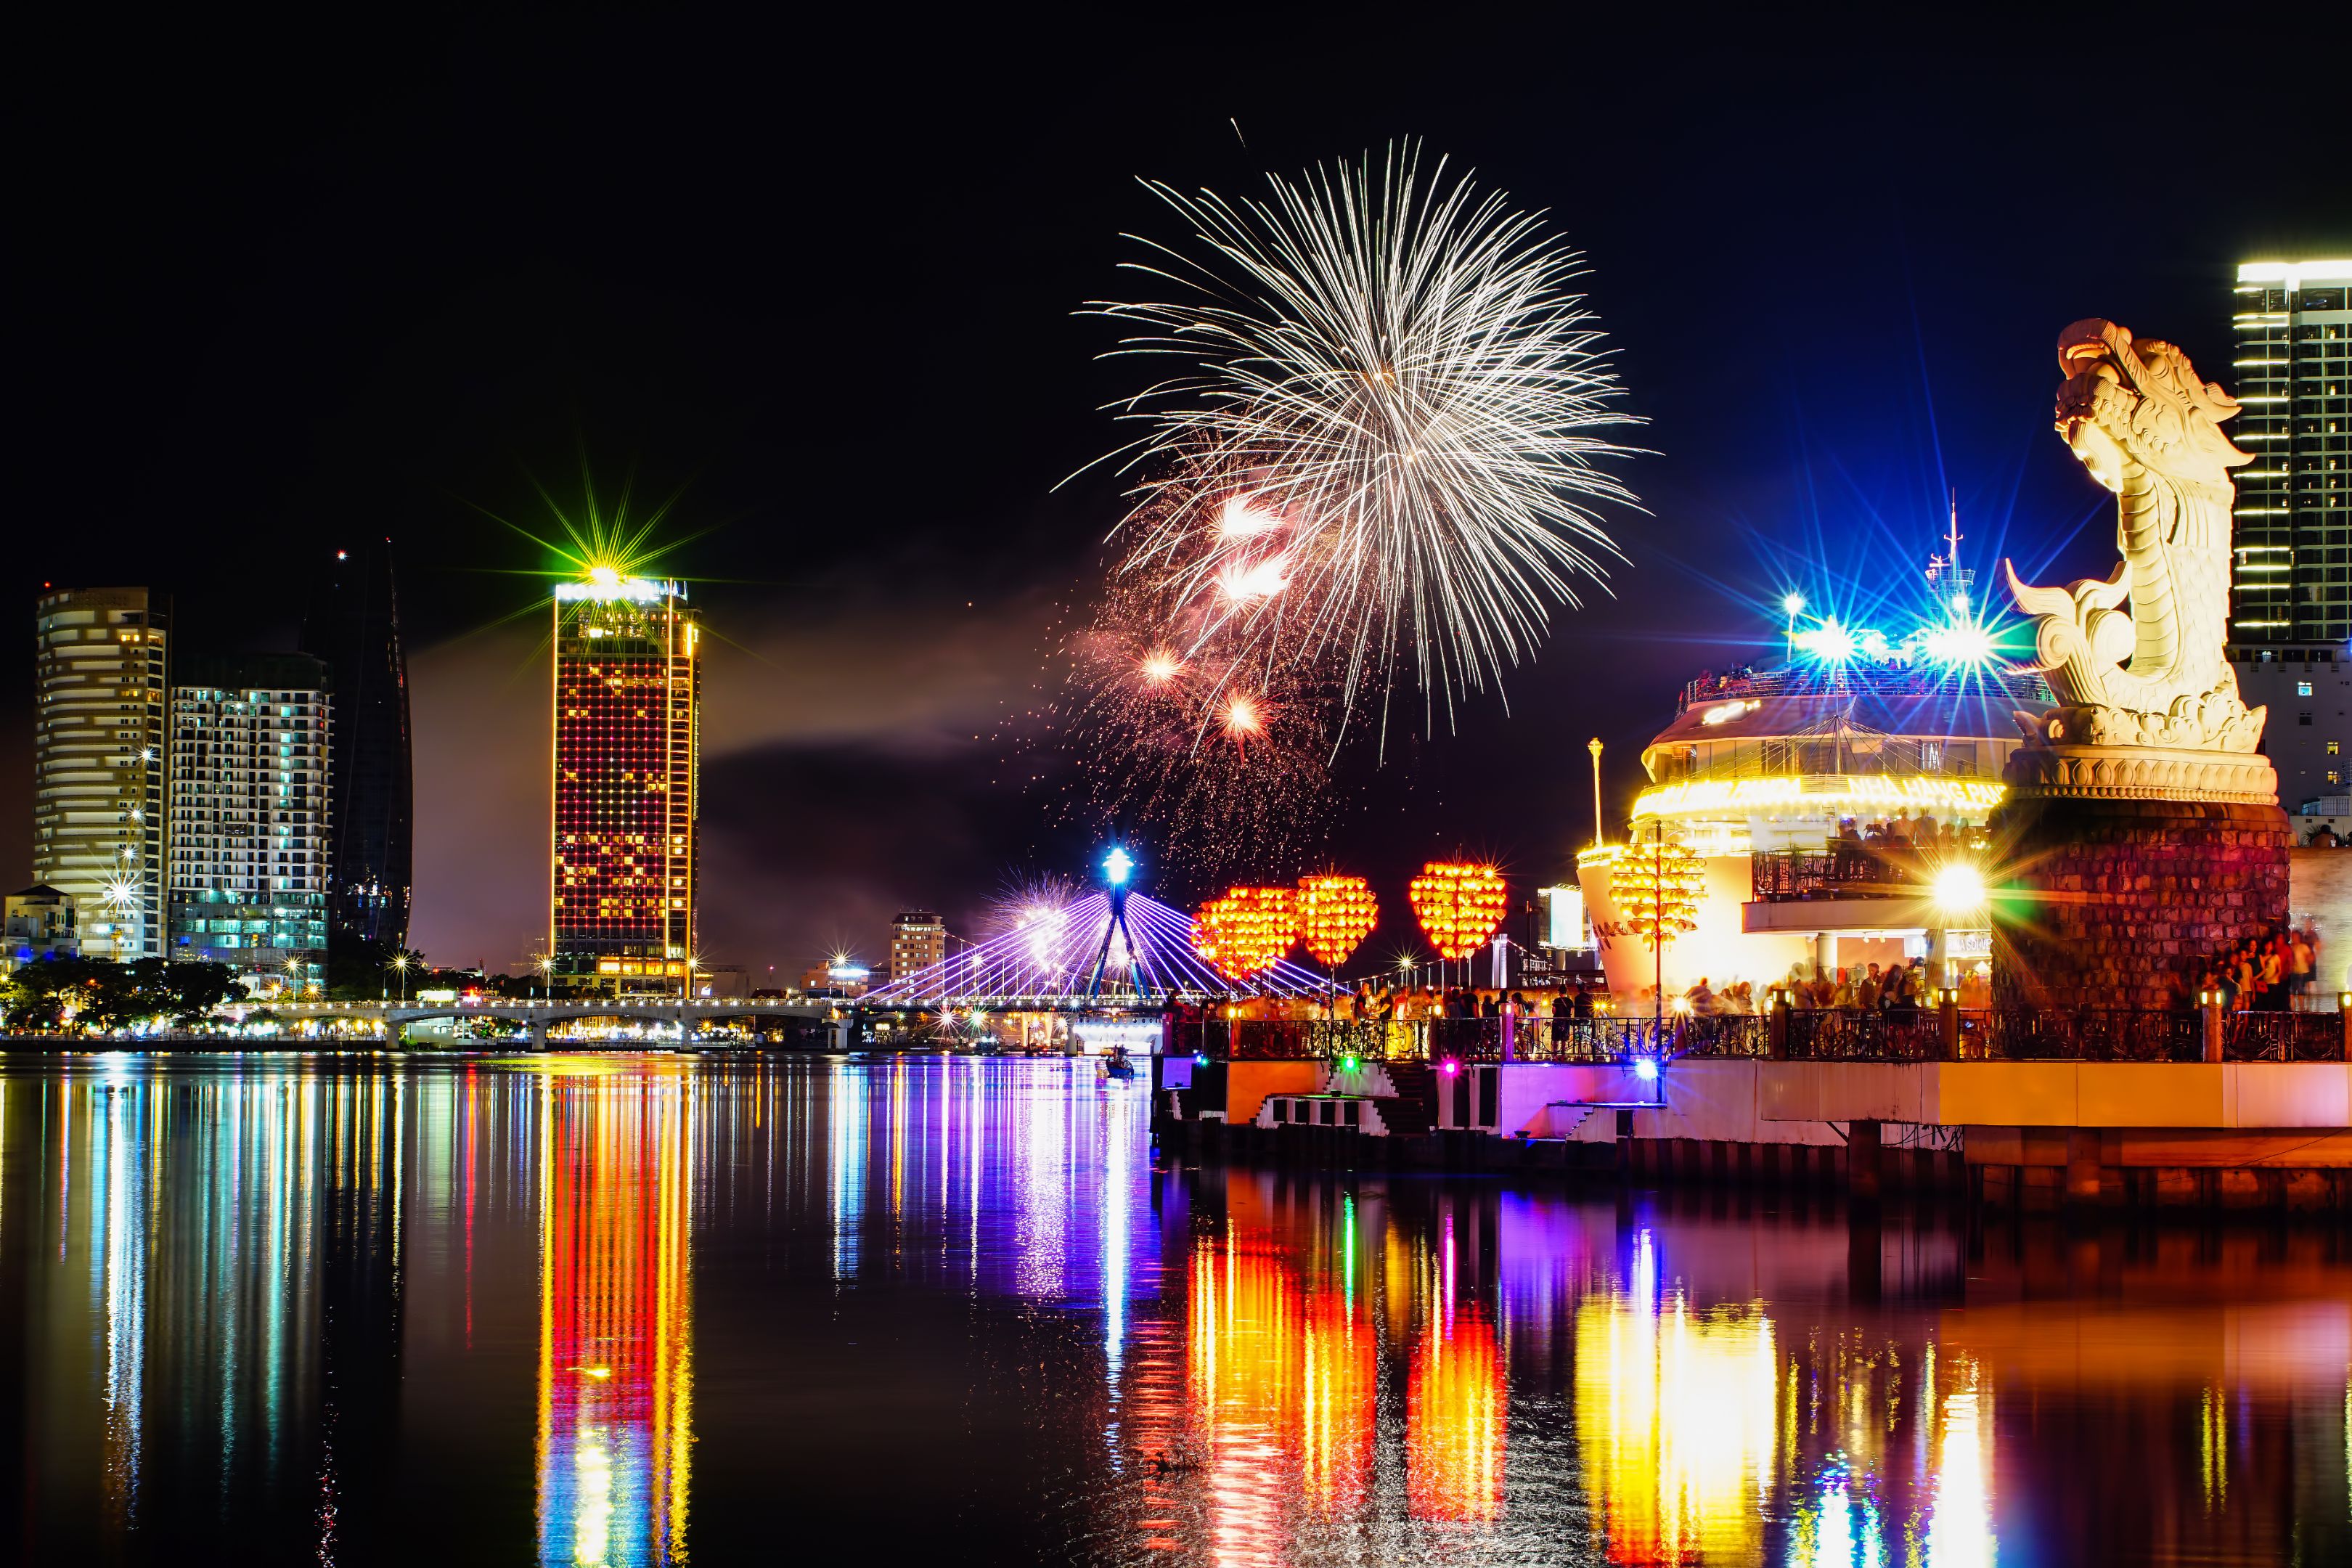 Firework festival in DaNang city.